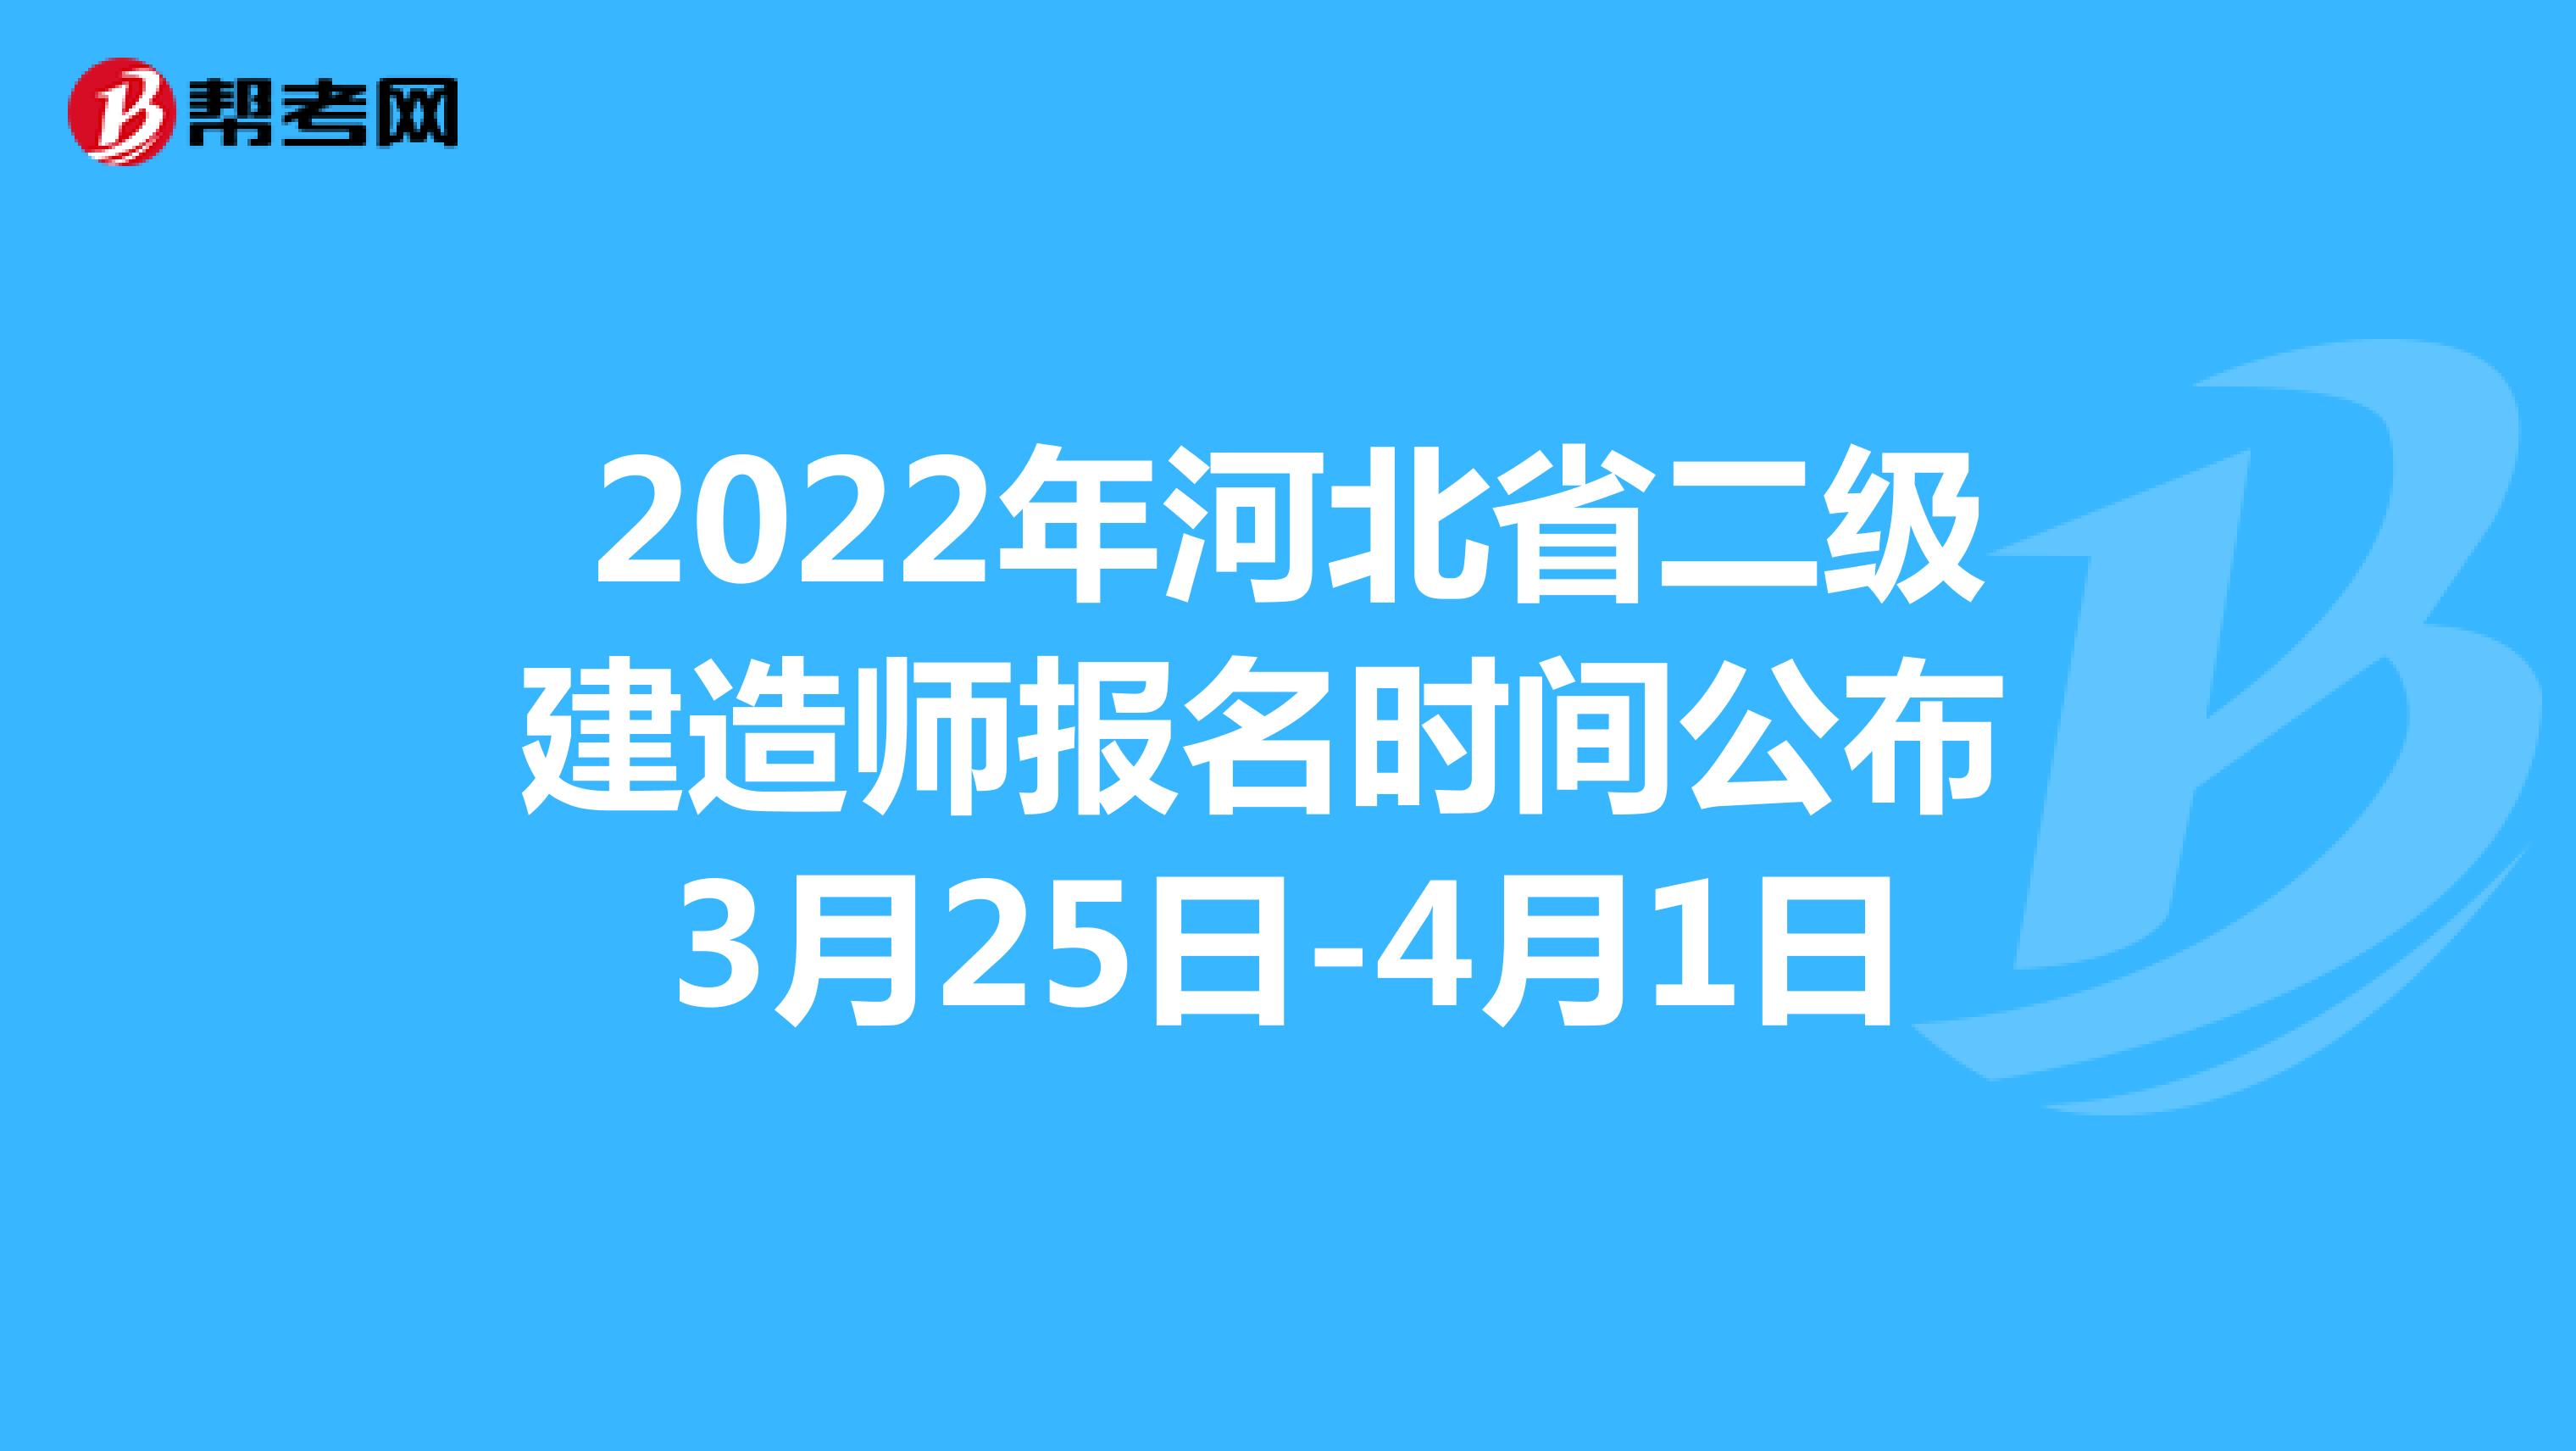 2022年河北省二級建造師報名時間公布 3月25日-4月1日